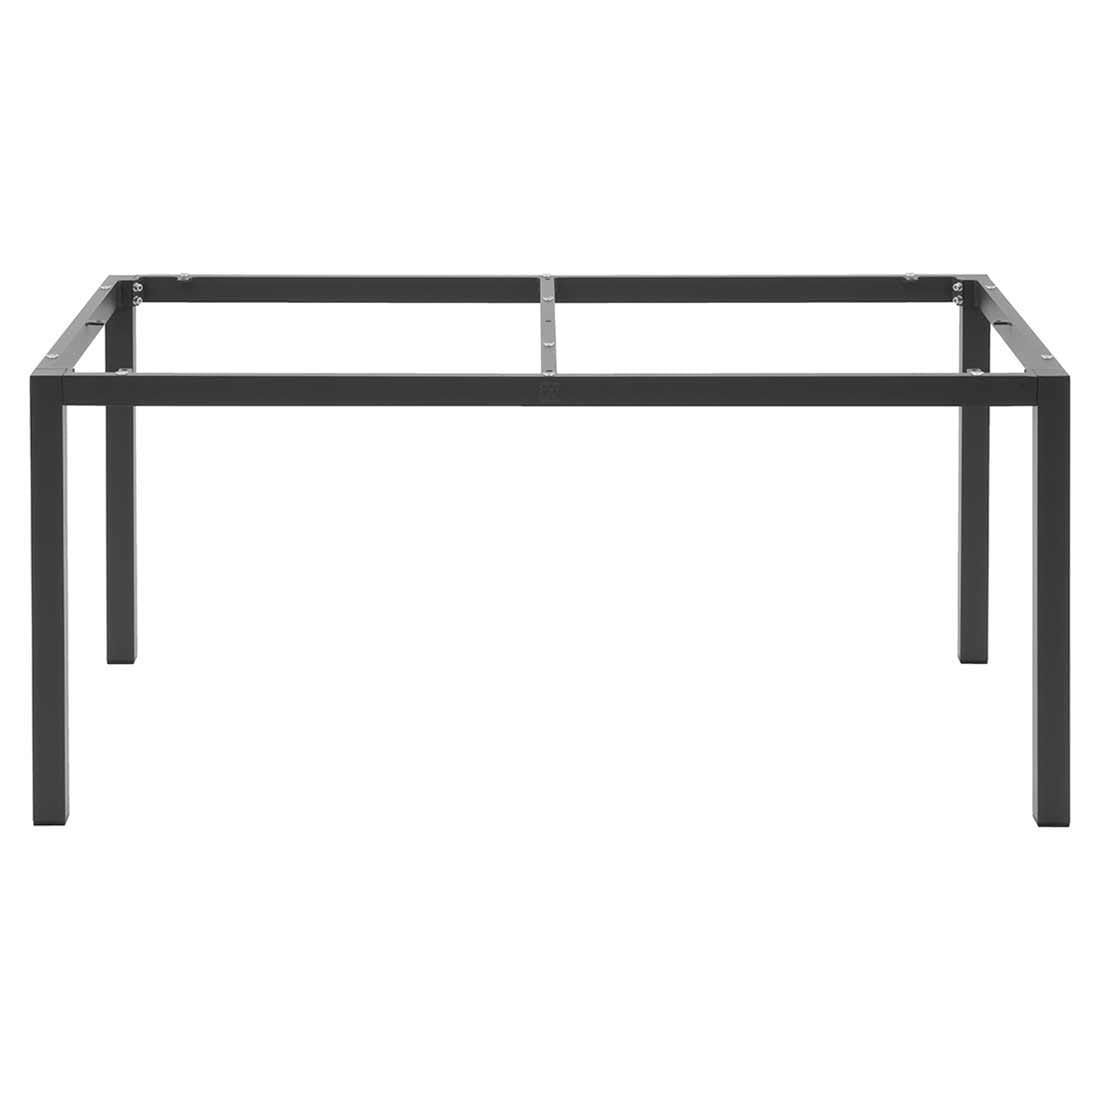 5-tlg. Siena Tisch mit Matt 160x90cm Garden Gartenmöbelset Anthrazit/Grau Reno